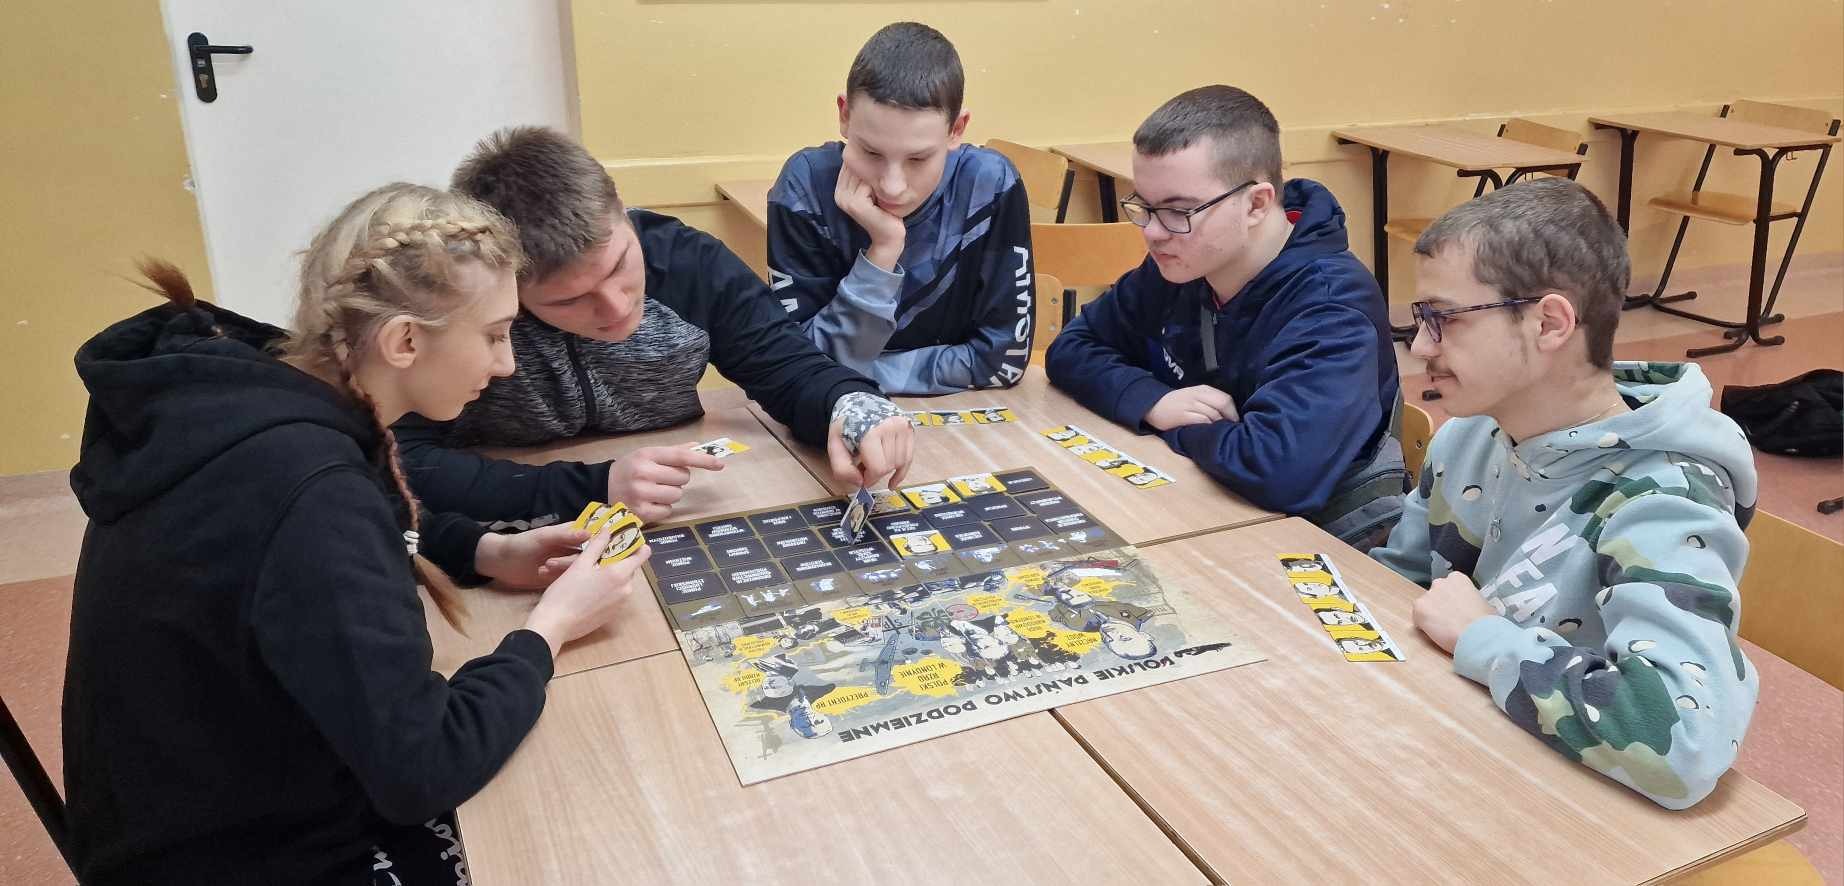 5 uczniów gra przy stoliku w historyczną grę planszową